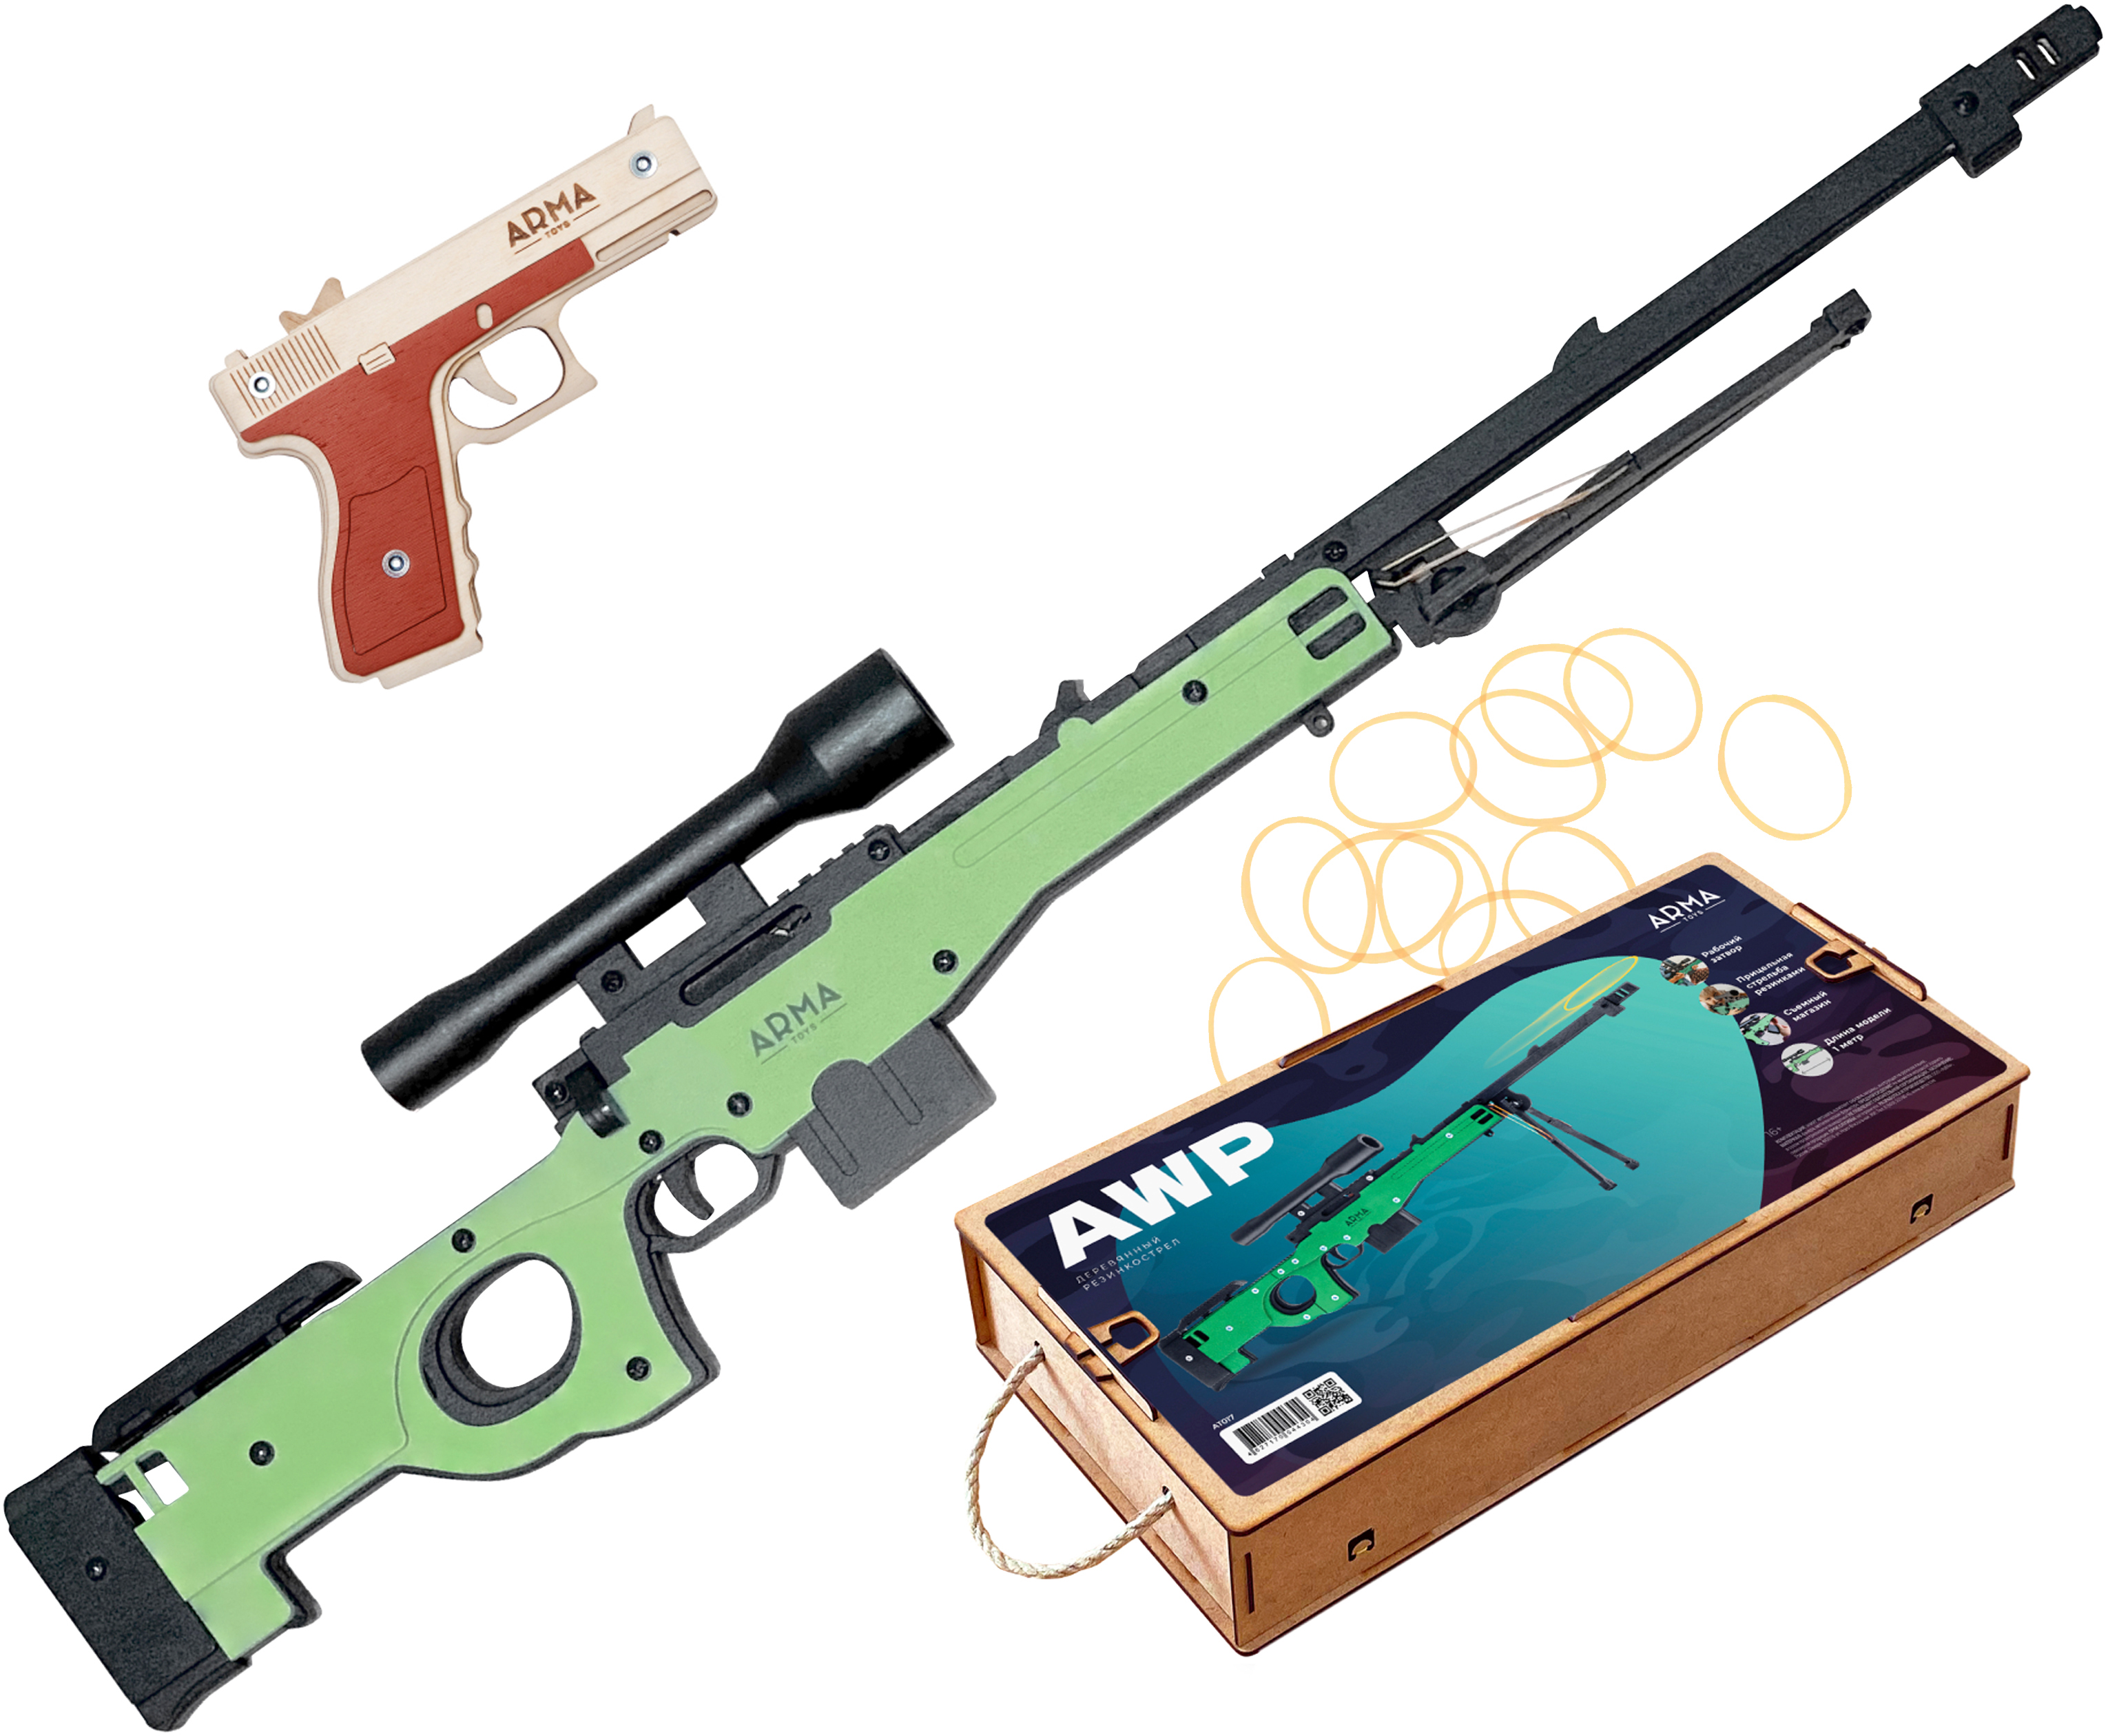 Набор игрушечных резинкострелов Arma toys Спецназ полиции винтовка AWP, пистолет Глок спецназ фбр 2 набор резинкострелов винтовка м4 и пистолет глок